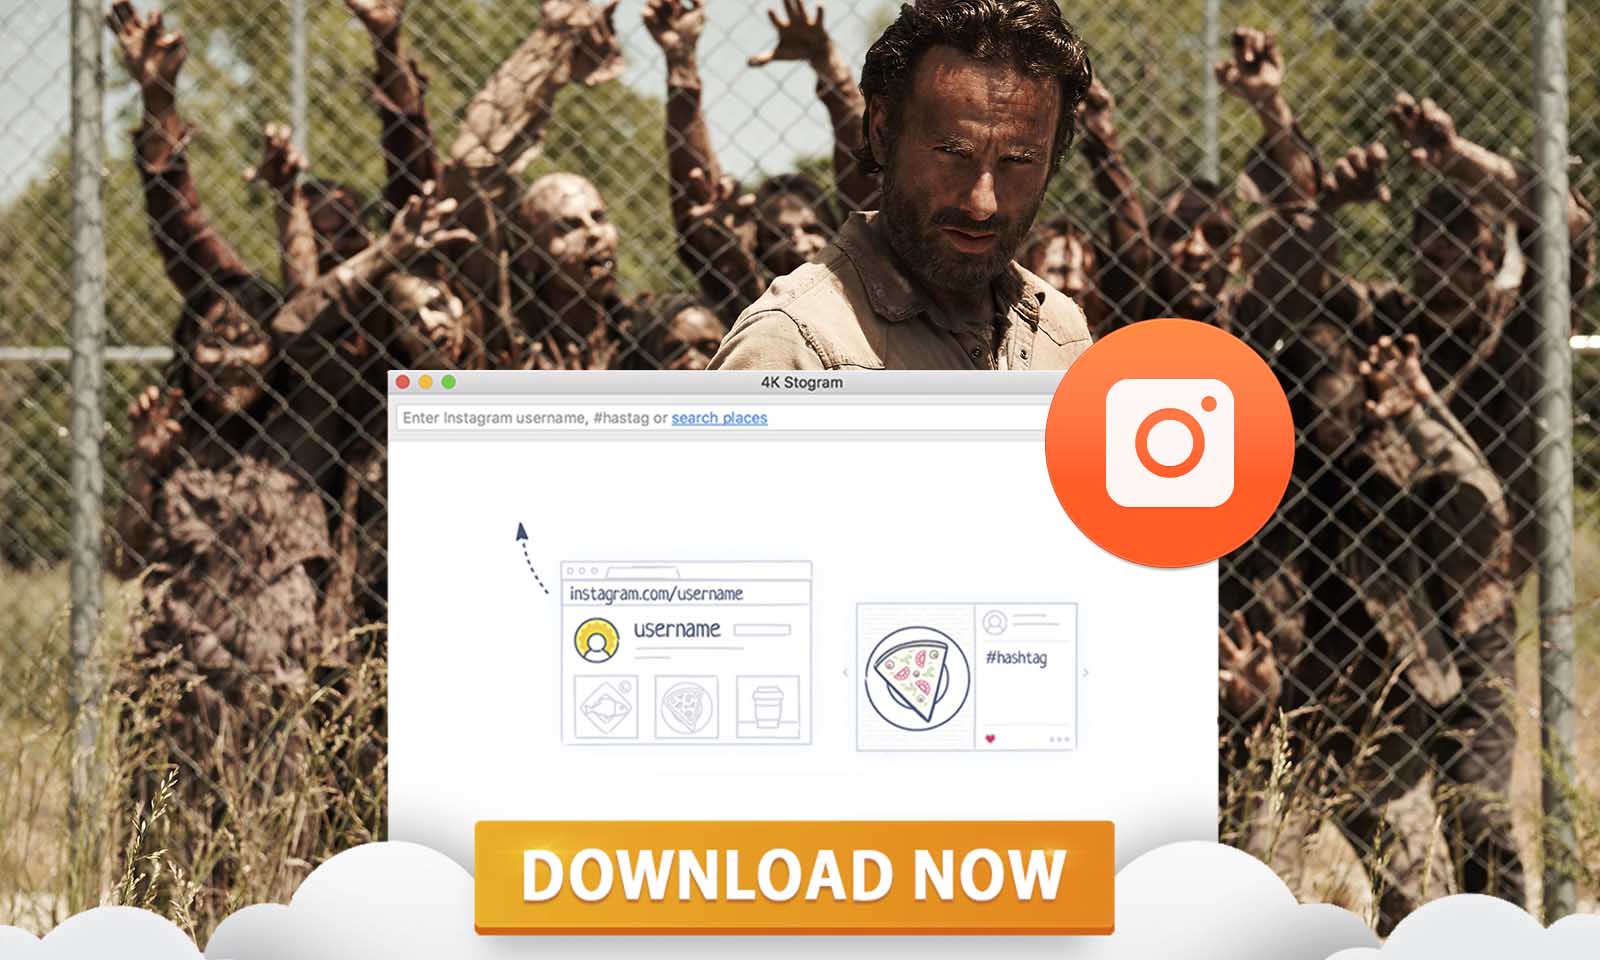 Baixe conteúdo de The Walking Dead do Instagram usando o 4K Stogram